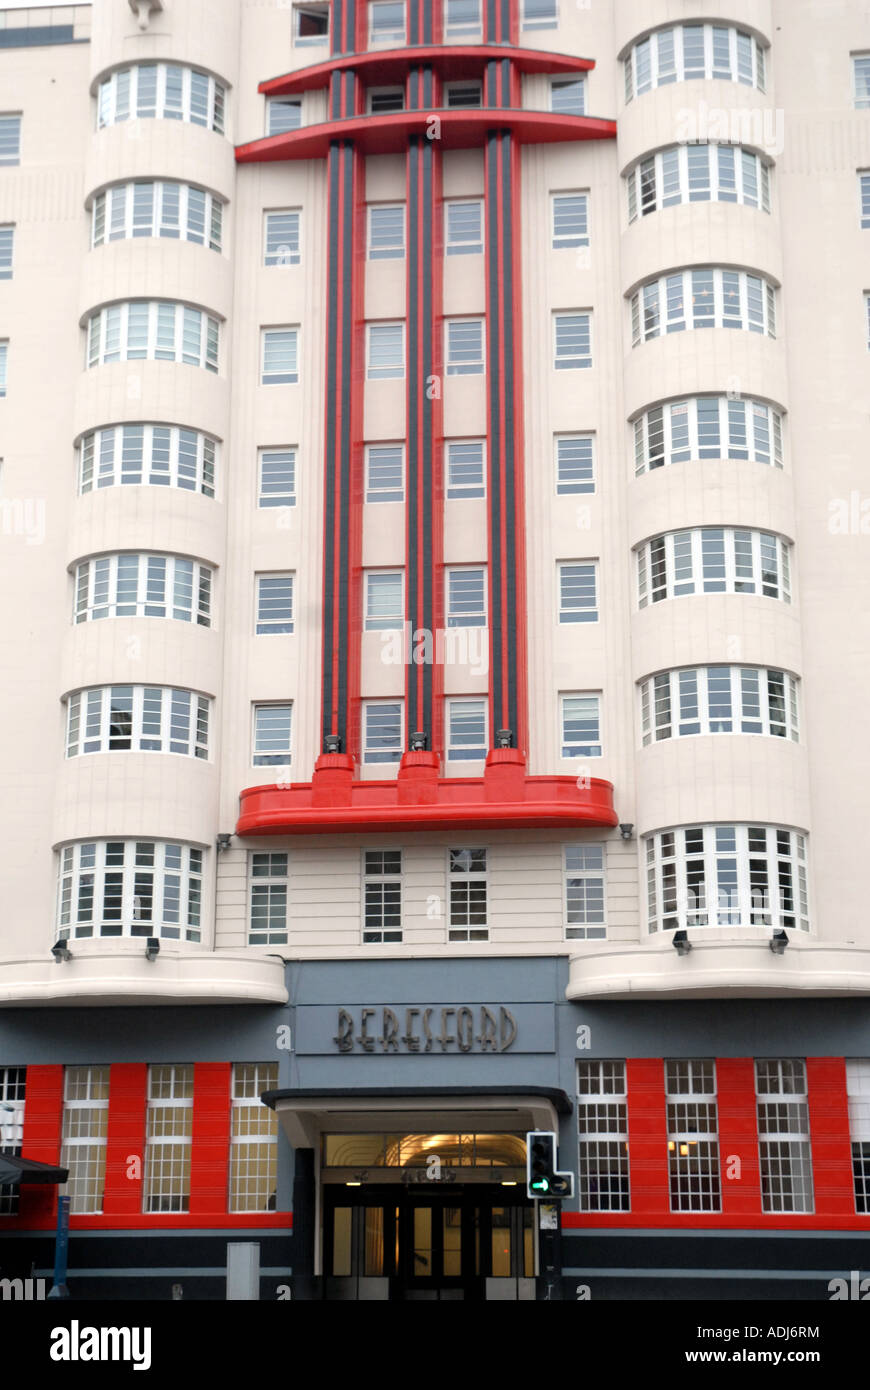 Le Beresford, à l'origine Un hôtel construit en 1938, de style Art Déco. Converti en appartements de luxe. Sauchiehall St, Glasgow. . Banque D'Images